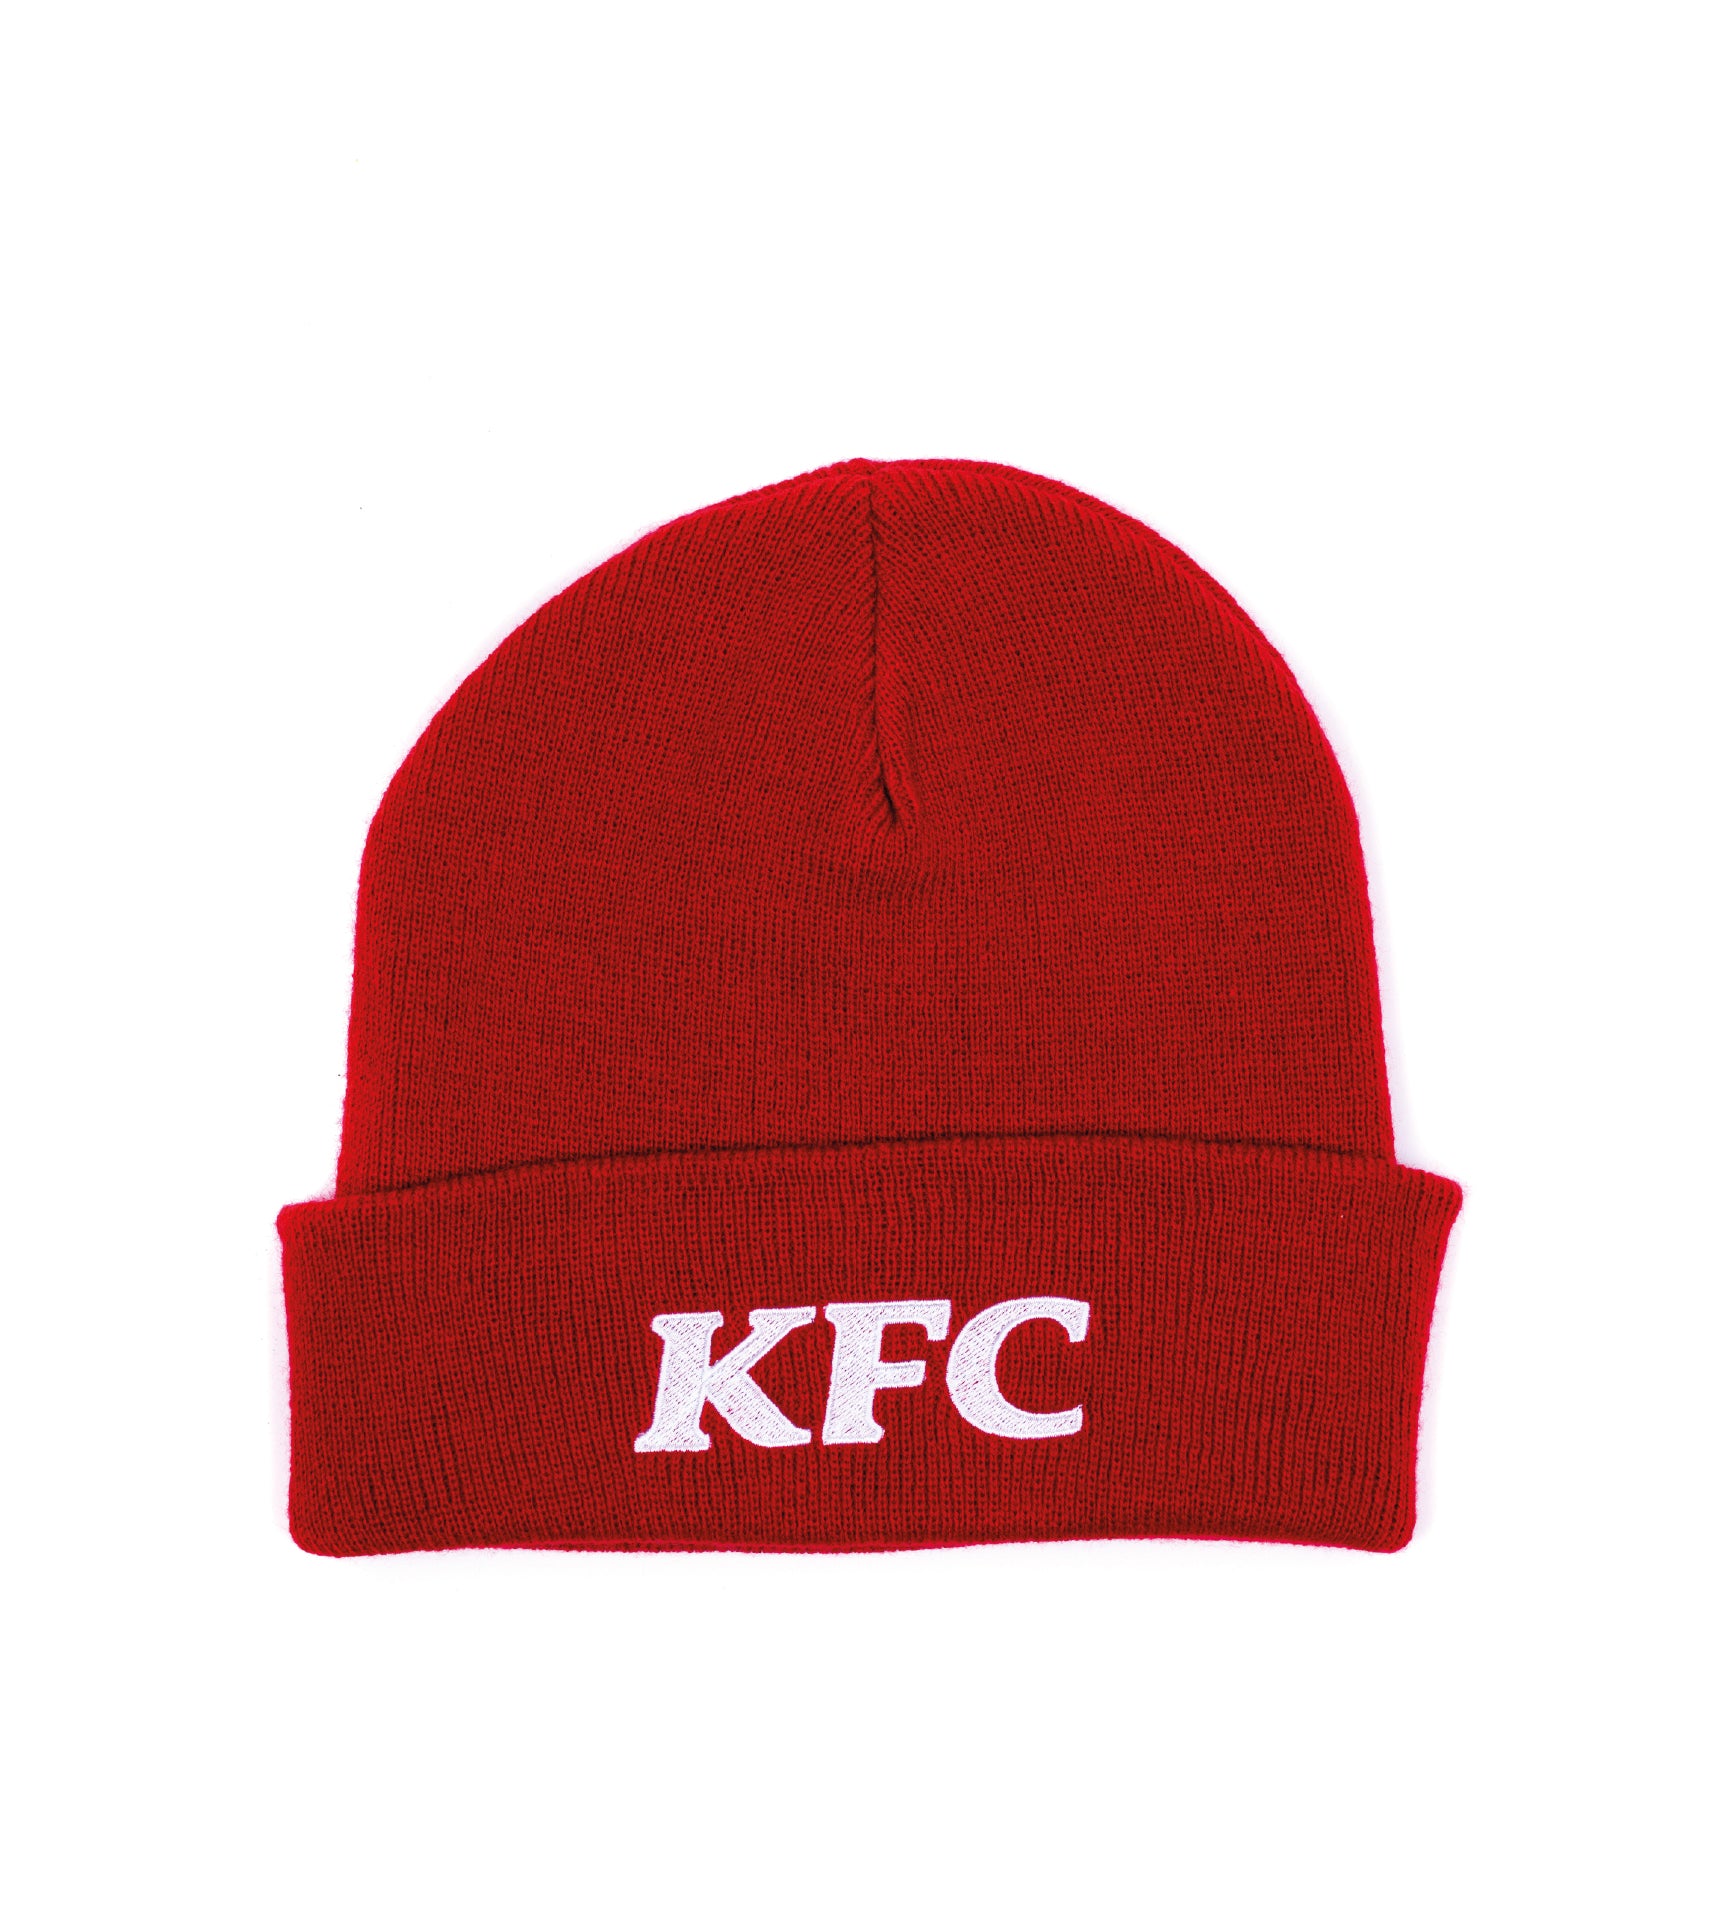 KFC Logo Beanie – KFC UK&I Shop